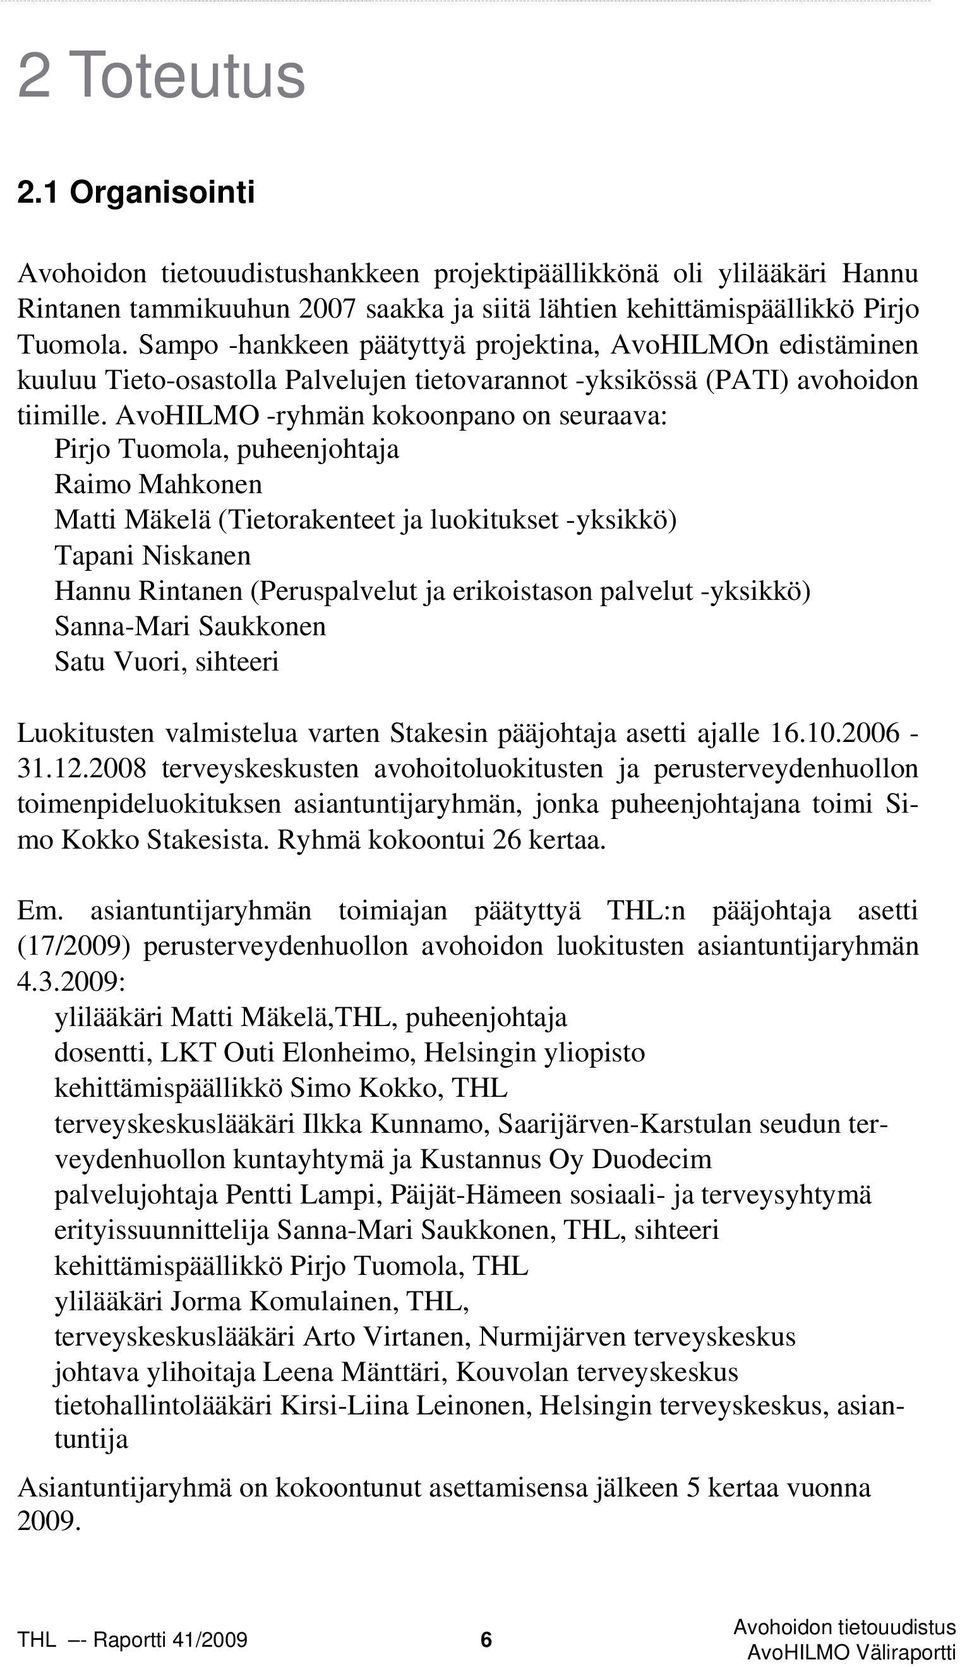 AvoHILMO -ryhmän kokoonpano on seuraava: Pirjo Tuomola, puheenjohtaja Raimo Mahkonen Matti Mäkelä (Tietorakenteet ja luokitukset -yksikkö) Tapani Niskanen Hannu Rintanen (Peruspalvelut ja